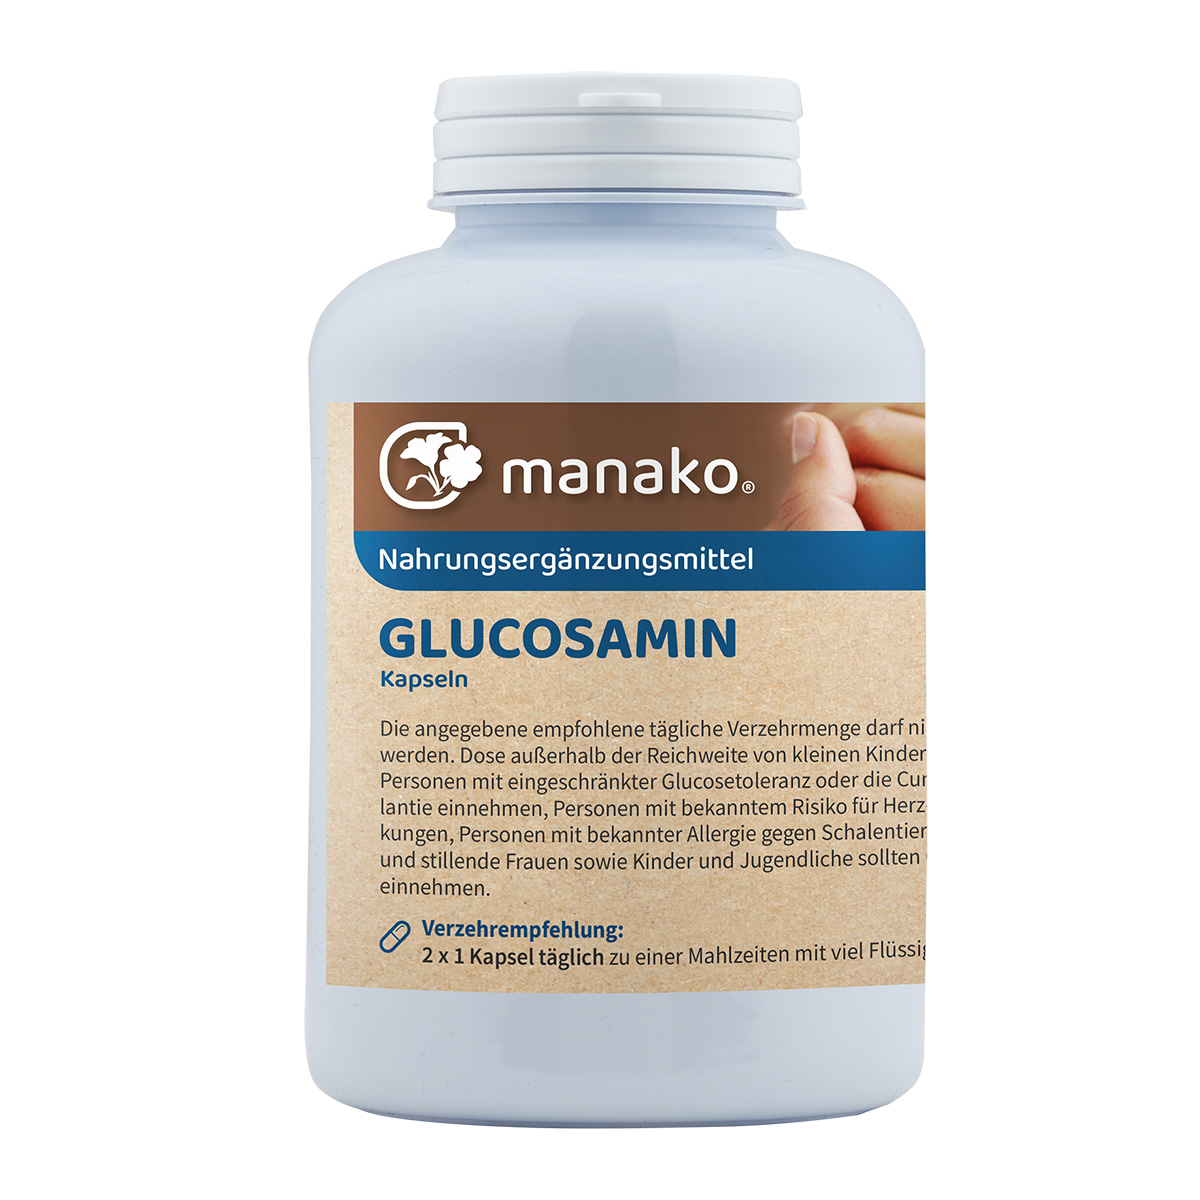 manako Glucosamin Kapseln, 300 Stück, Dose a 225 g